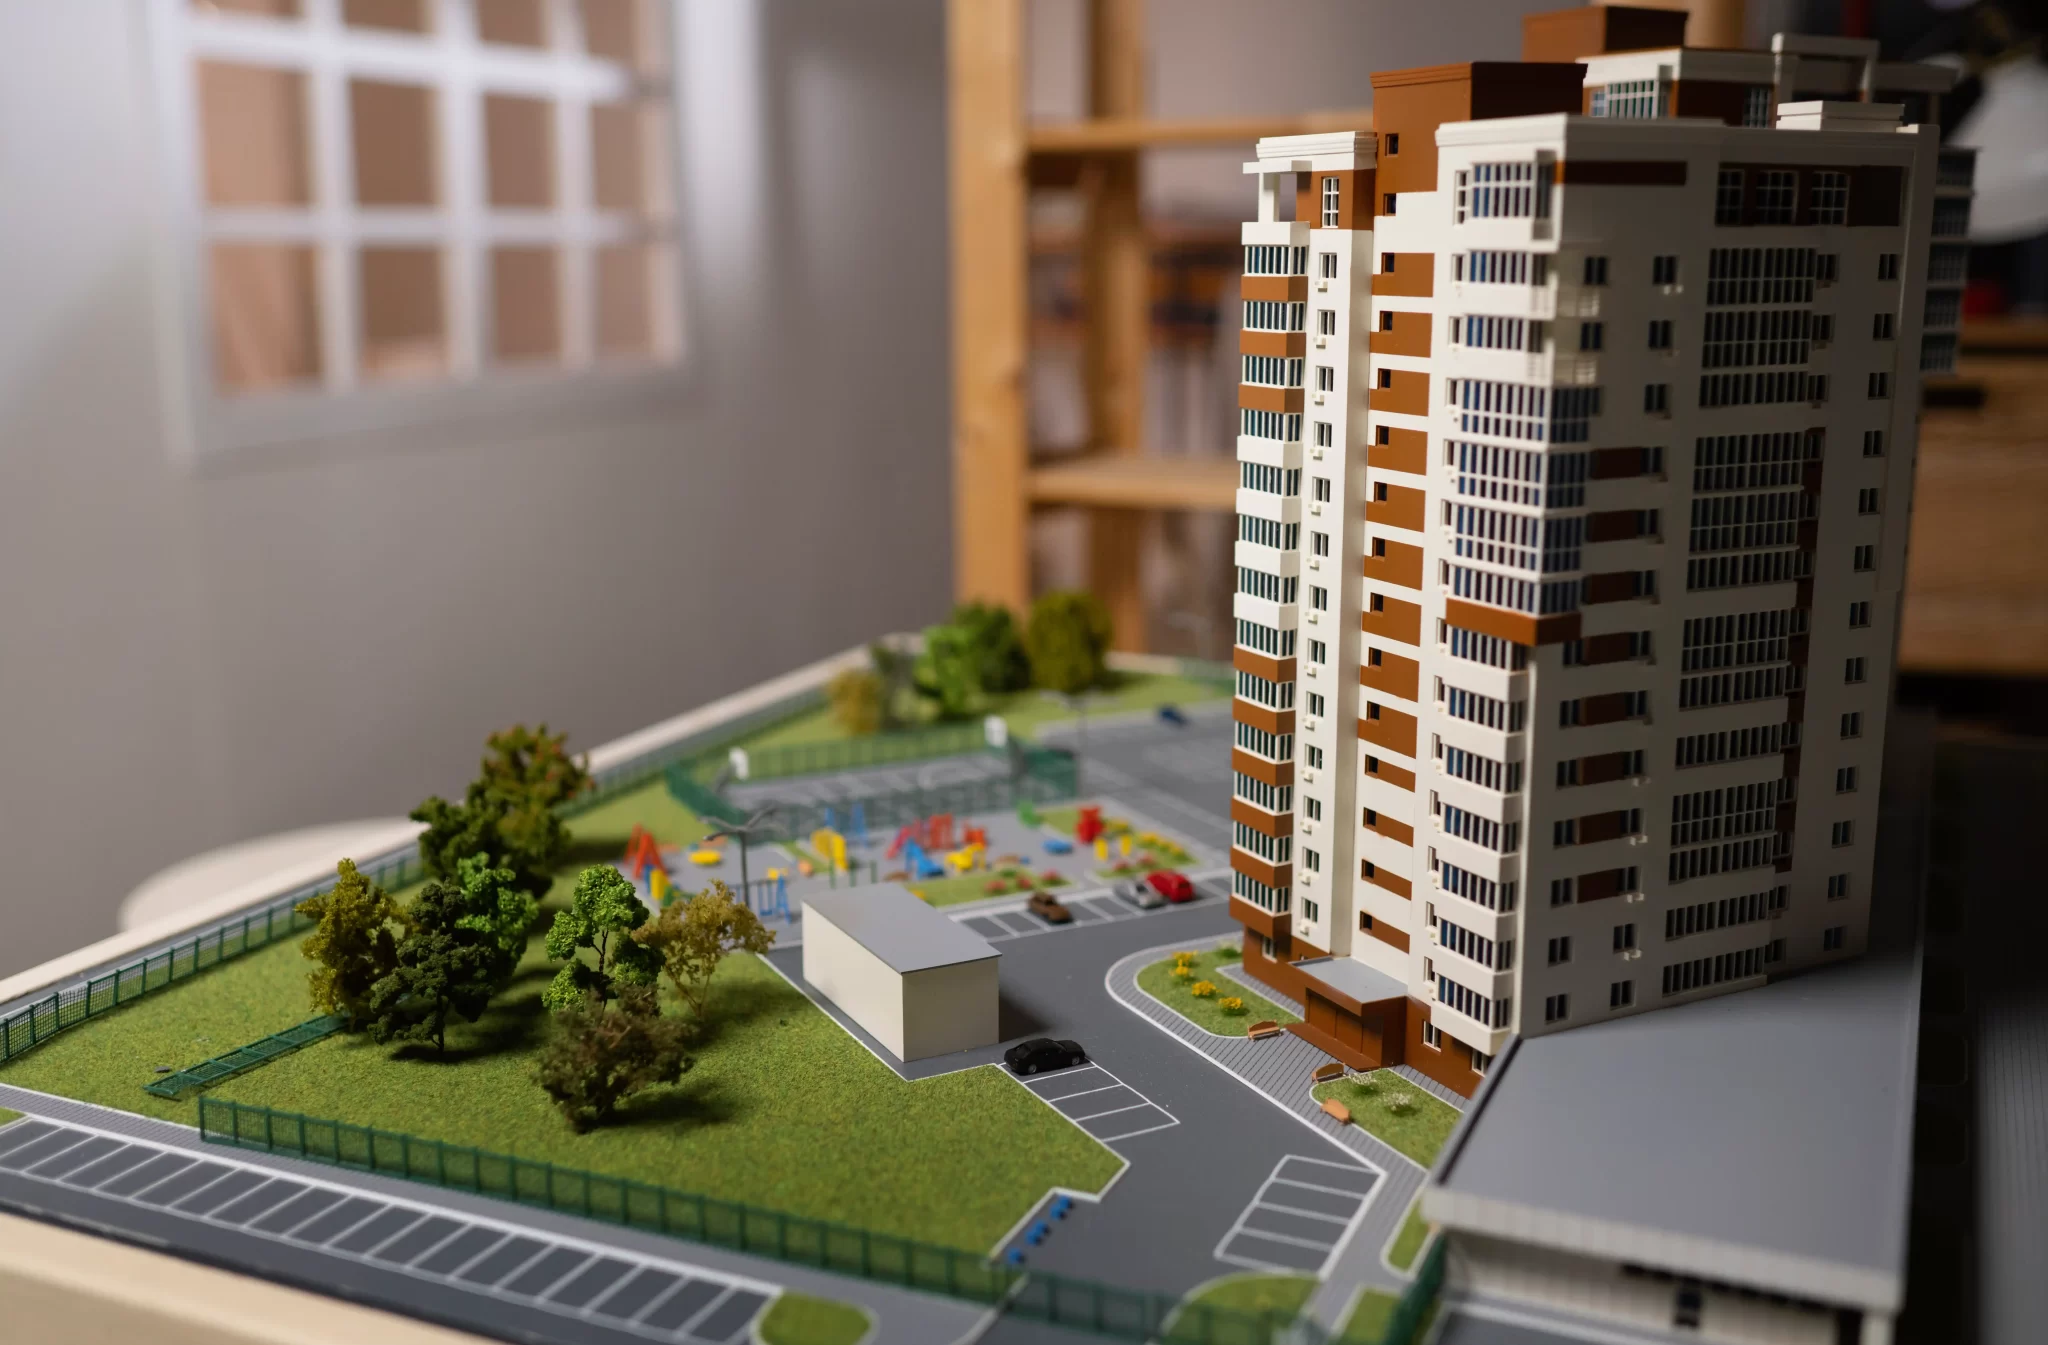 3D Model of a Building